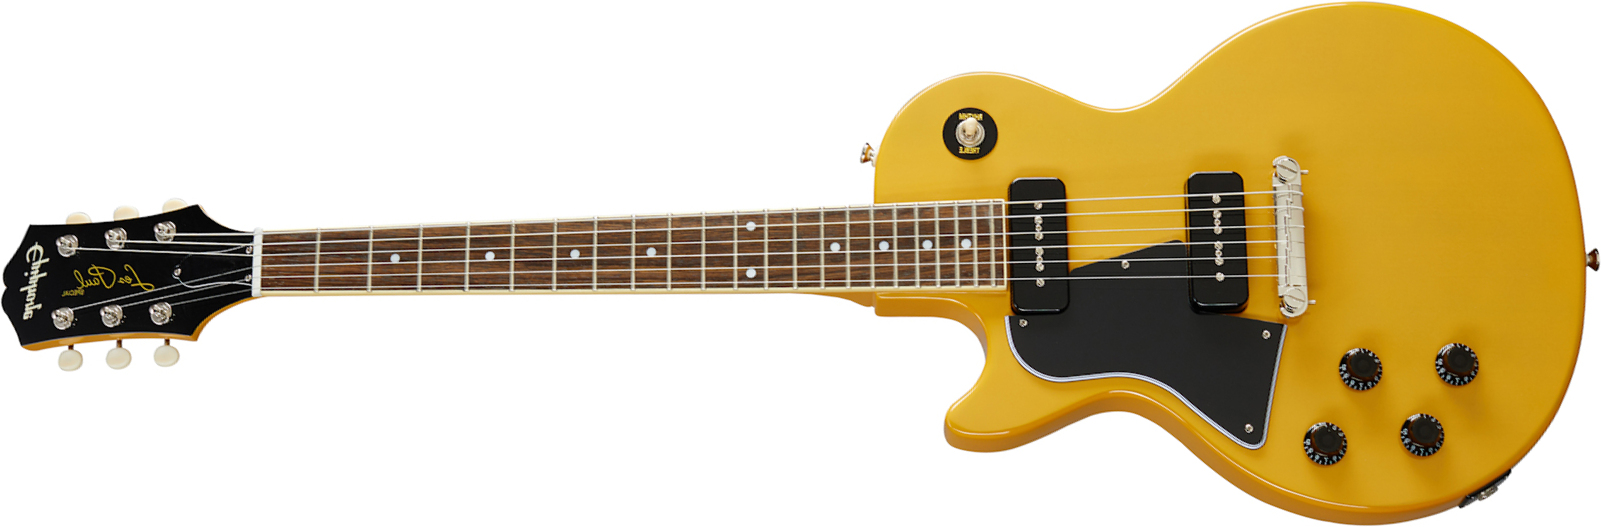 Epiphone Les Paul Special Lh Original Gaucher 2s P90 Ht Lau - Tv Yellow - E-Gitarre für Linkshänder - Main picture